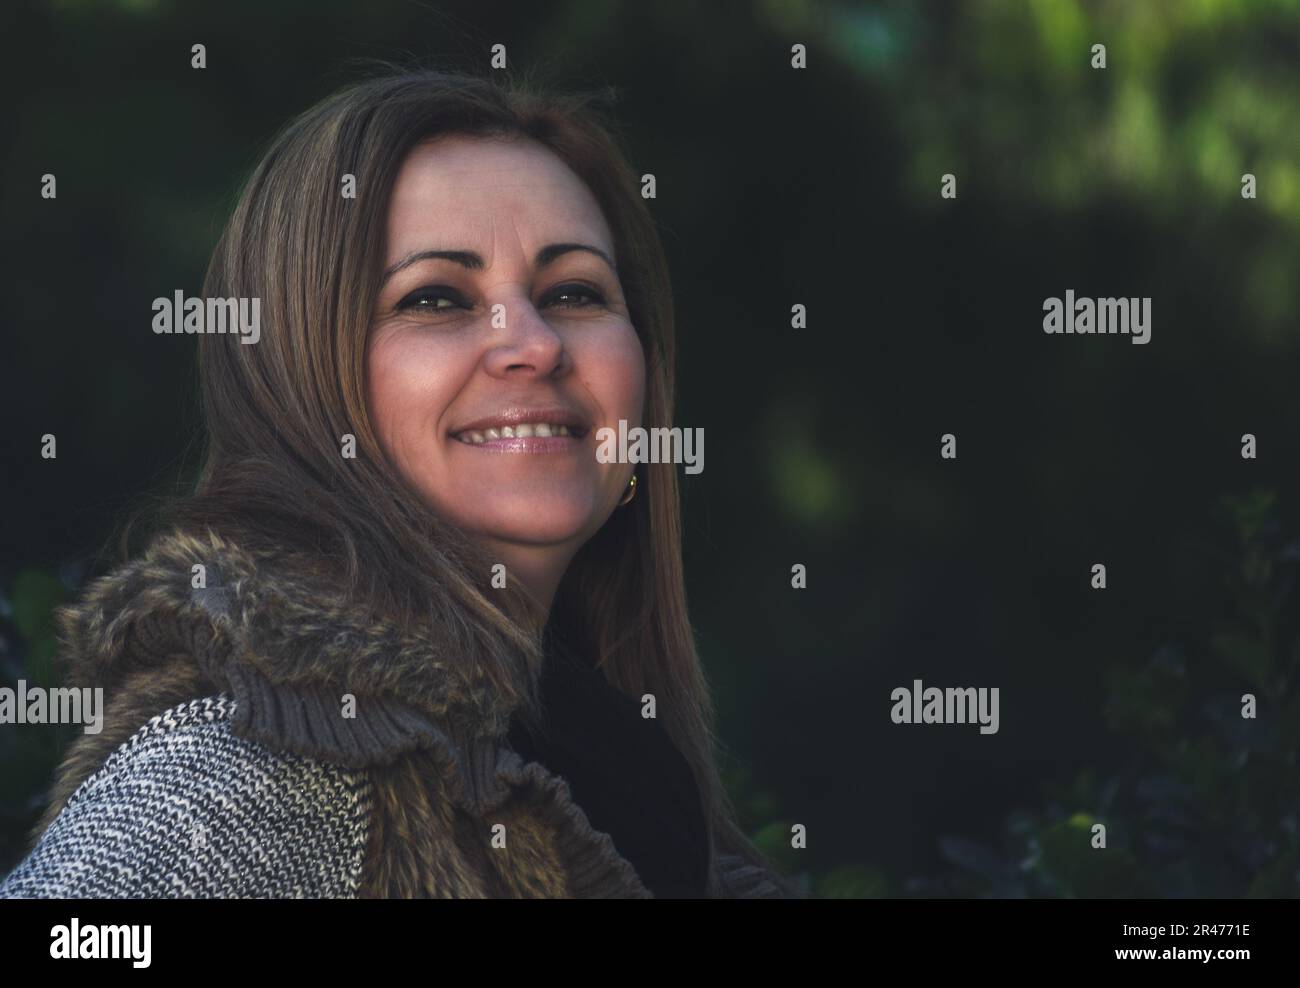 Porträt einer lächelnden blonden Frau mittleren Alters in der Natur, mit unscharfem dunkelgrünen Hintergrund. Lifestyle-Konzept. Stockfoto